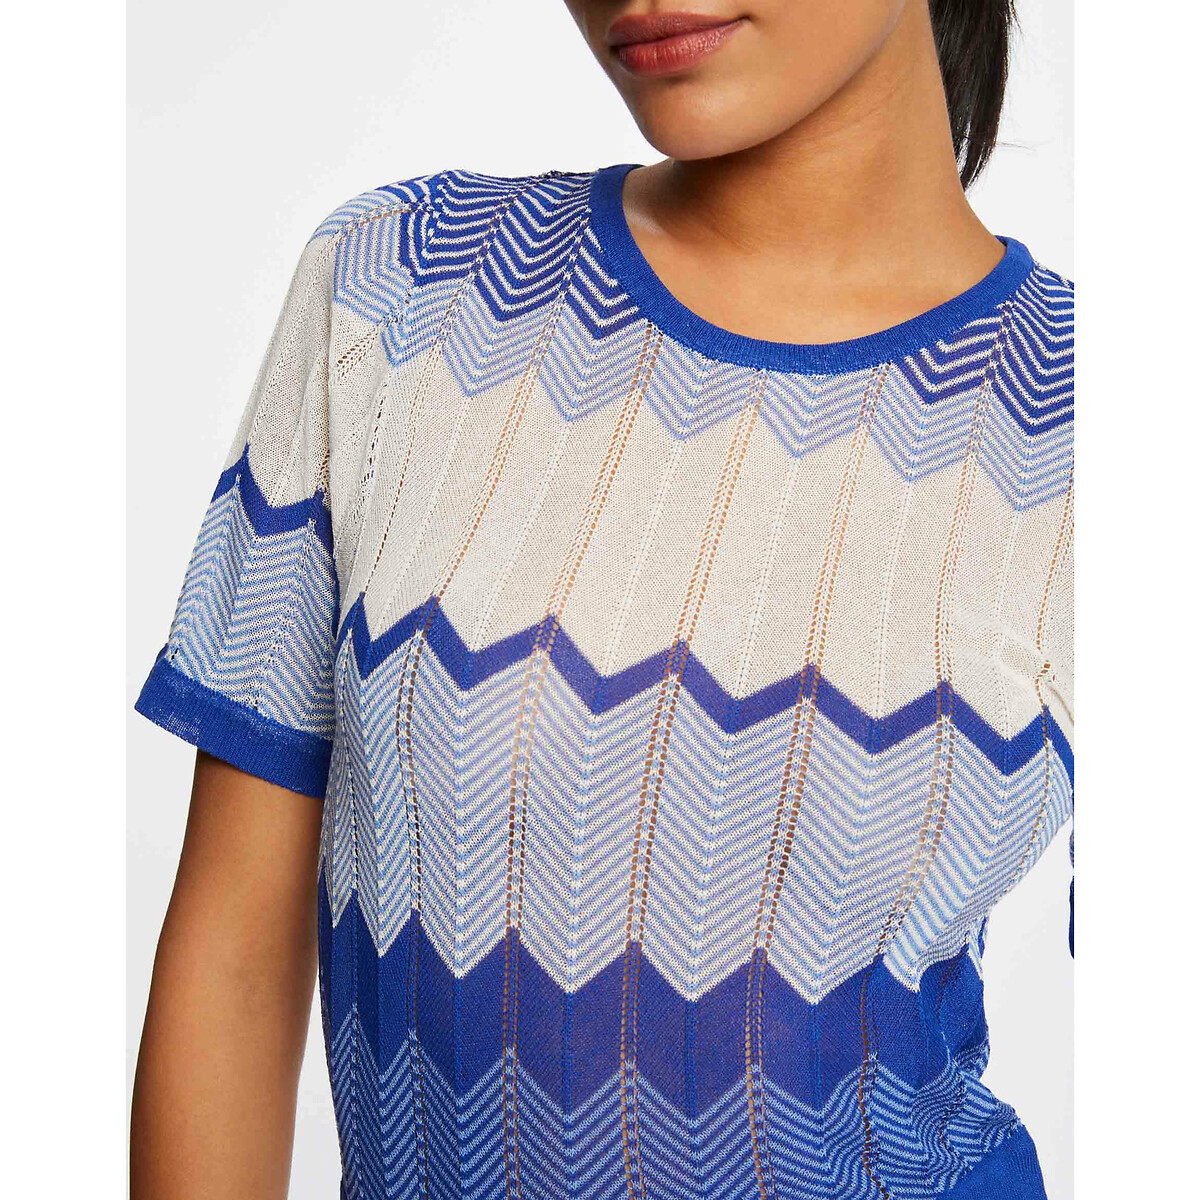 Платье-пуловер Длинное прямое с зигзагообразным принтом L синий LaRedoute, размер L - фото 2